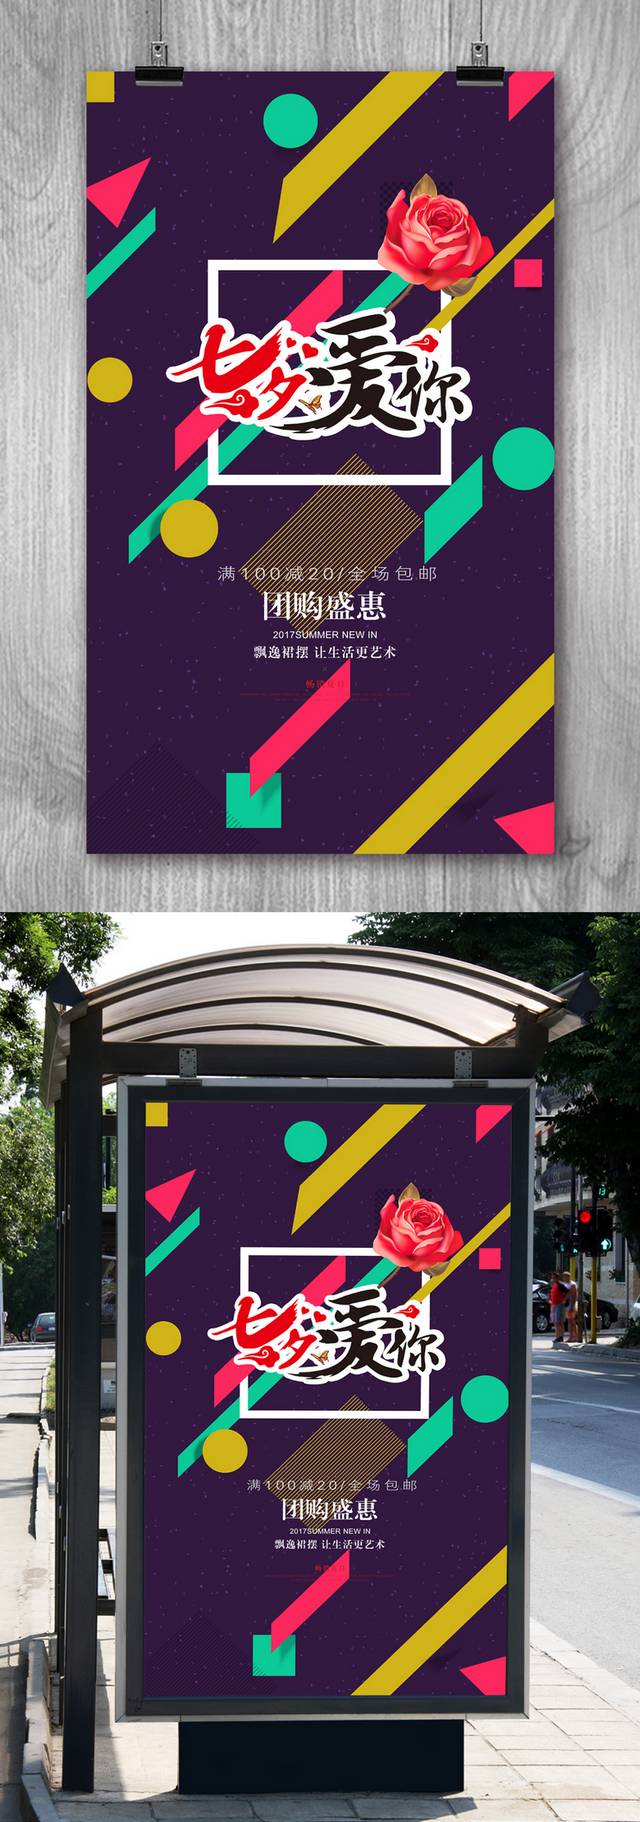 七夕节宣传海报模板免费下载